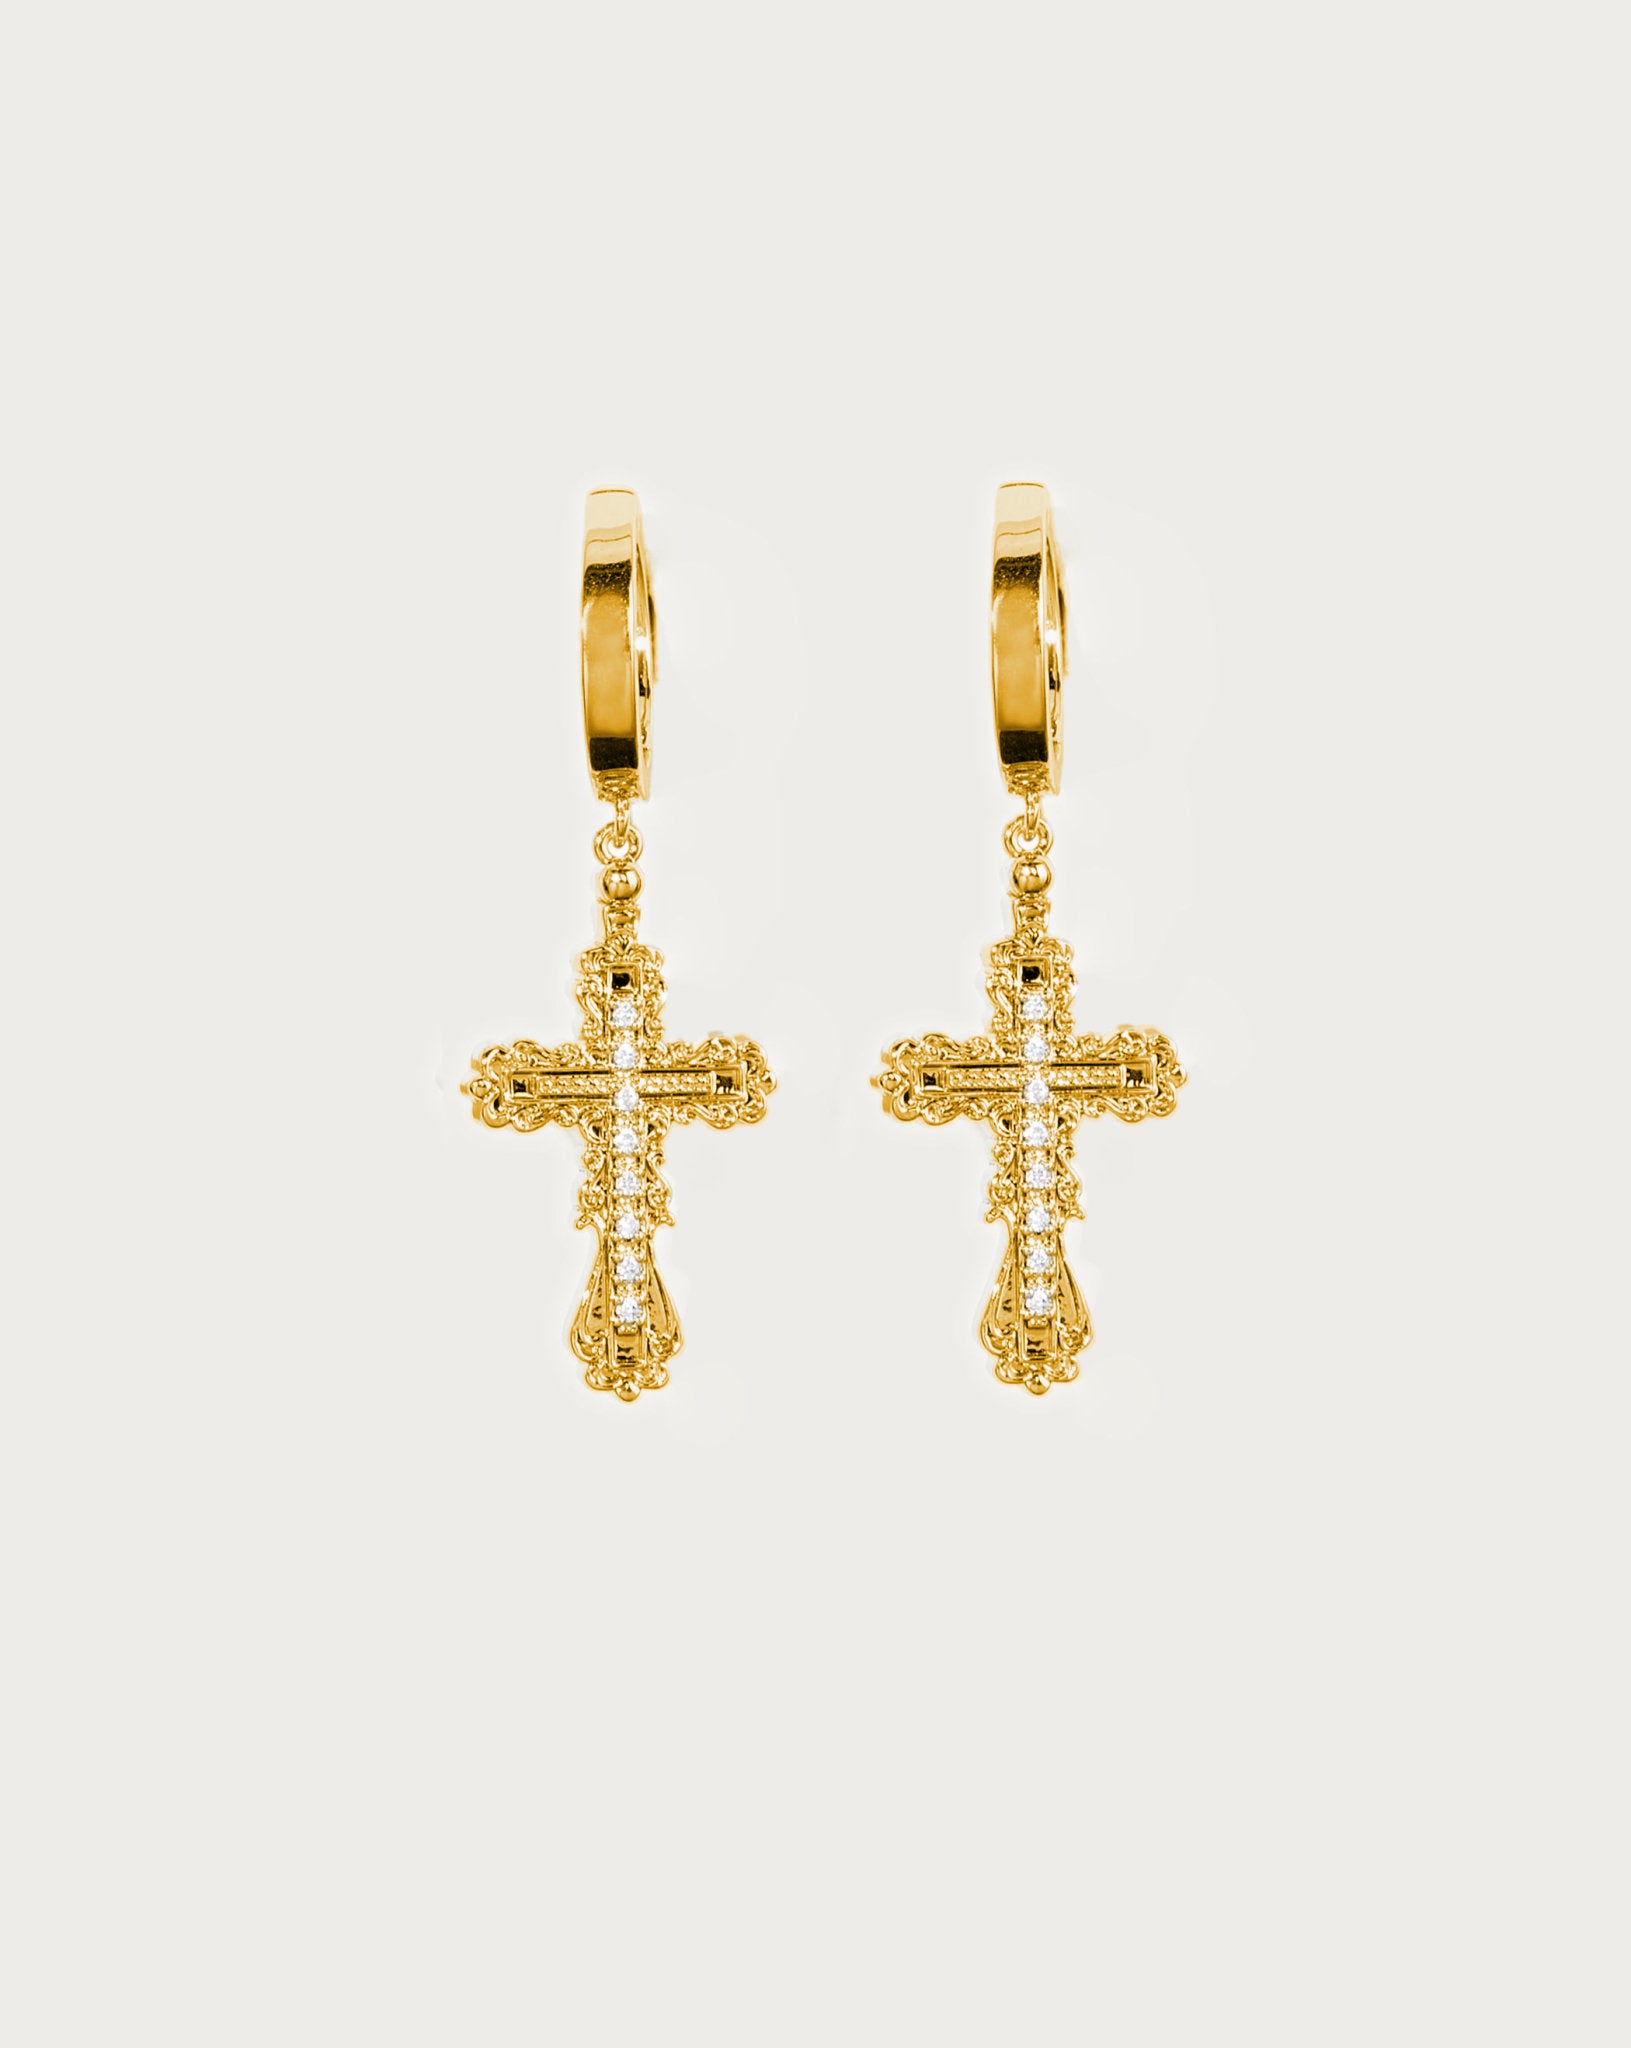 Everette Cross Earrings in Gold